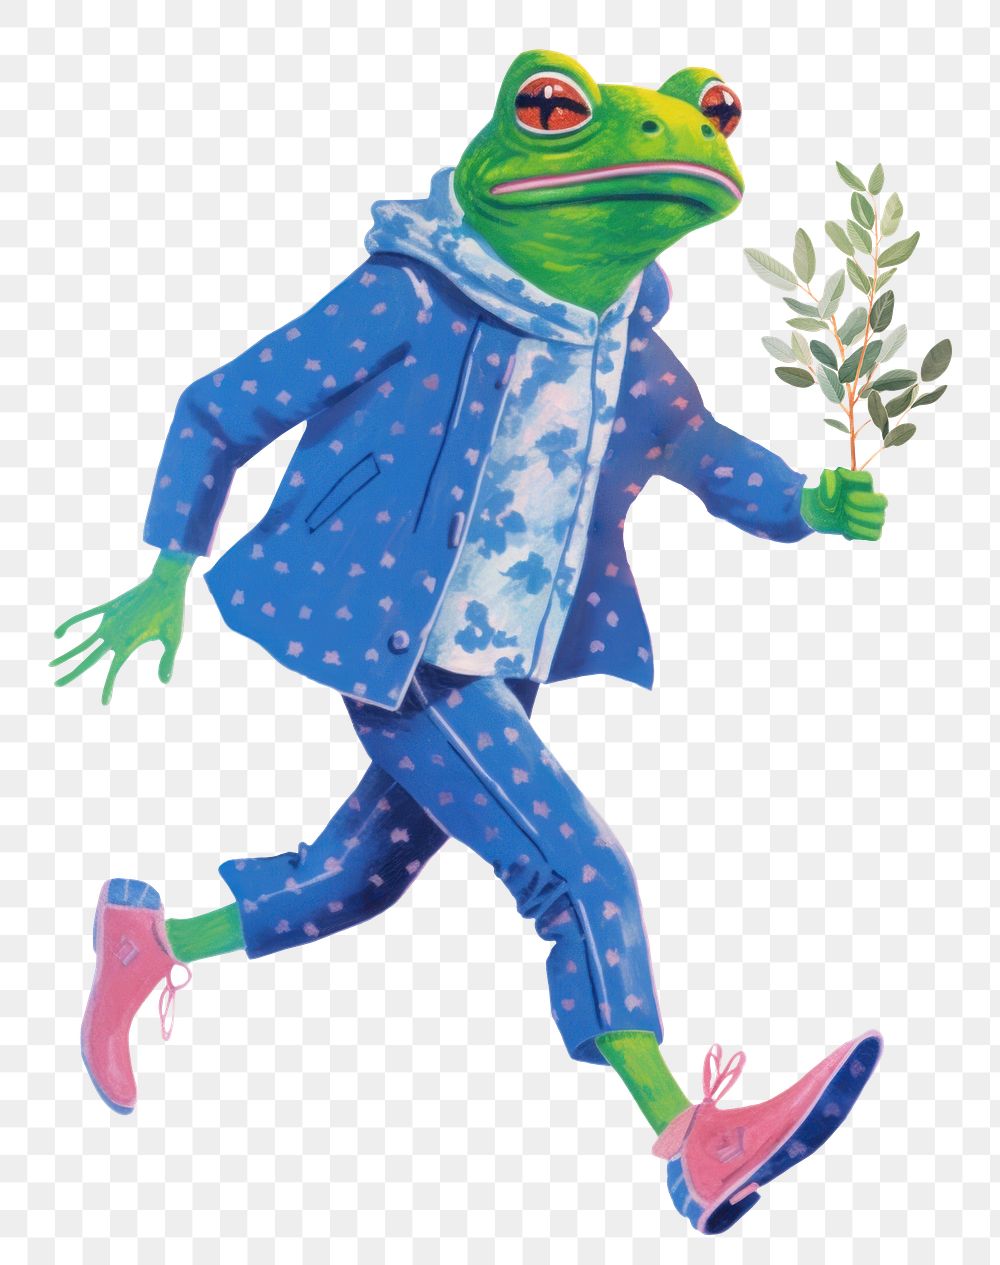 Frog character png holding leaf digital art illustration, transparent background